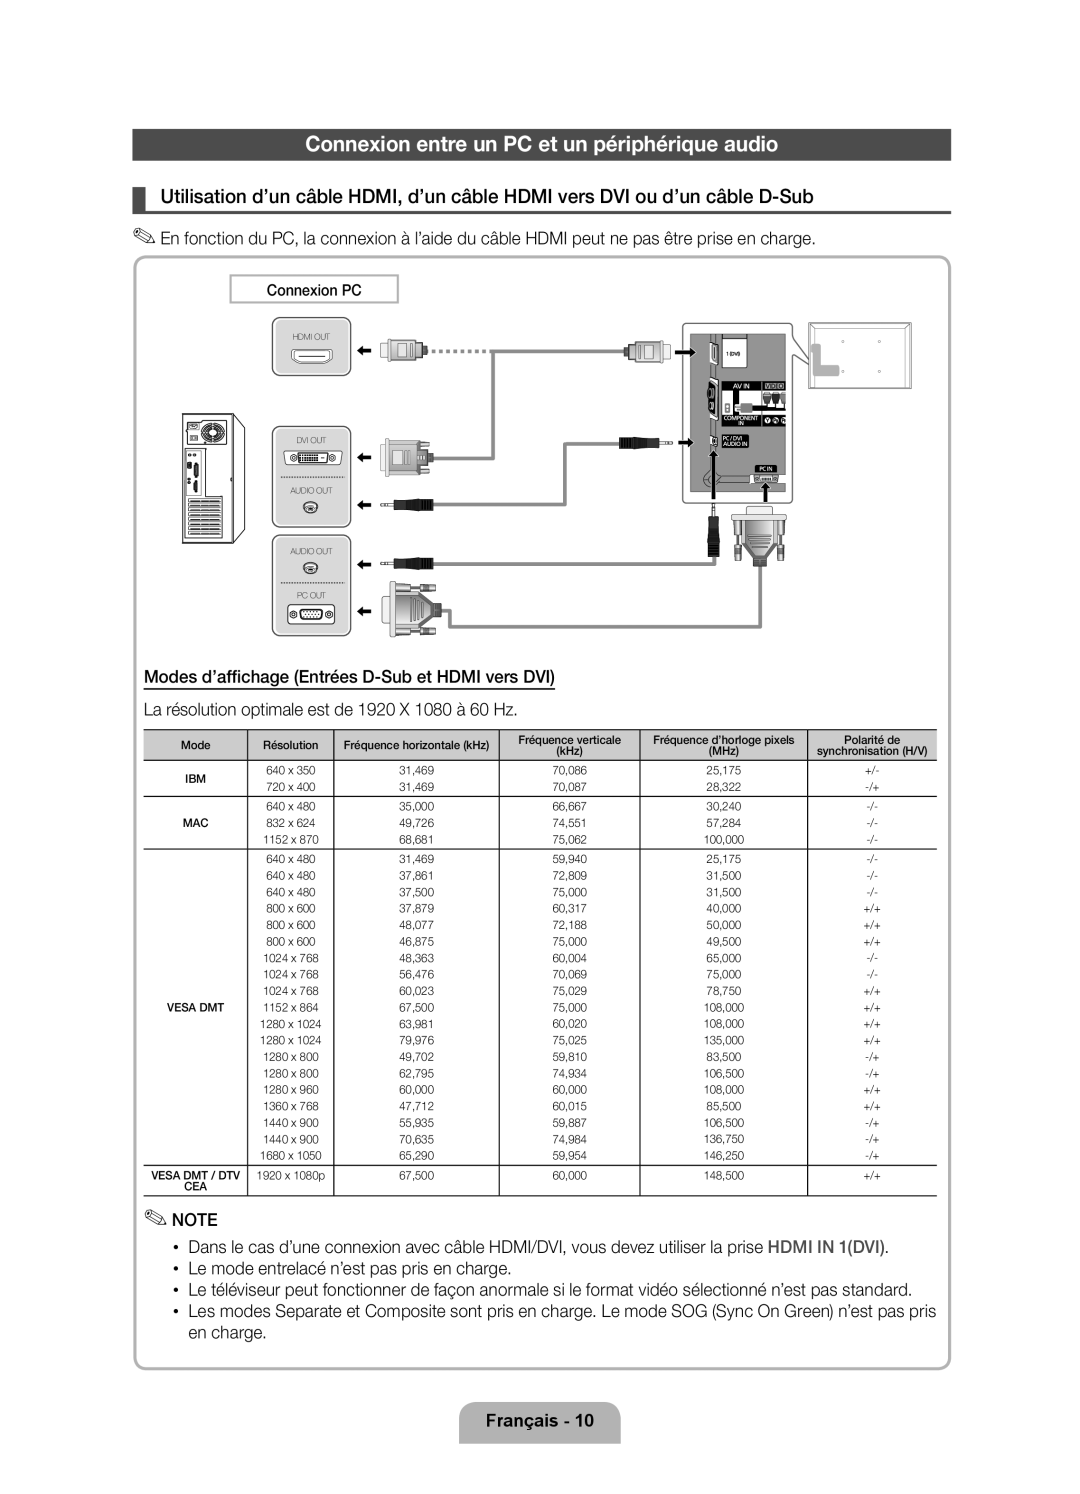 Samsung UE40D7000LSXZF, UE55D7000LSXZF, UE46D7000LSXZF manual Connexion entre un PC et un périphérique audio, Français 